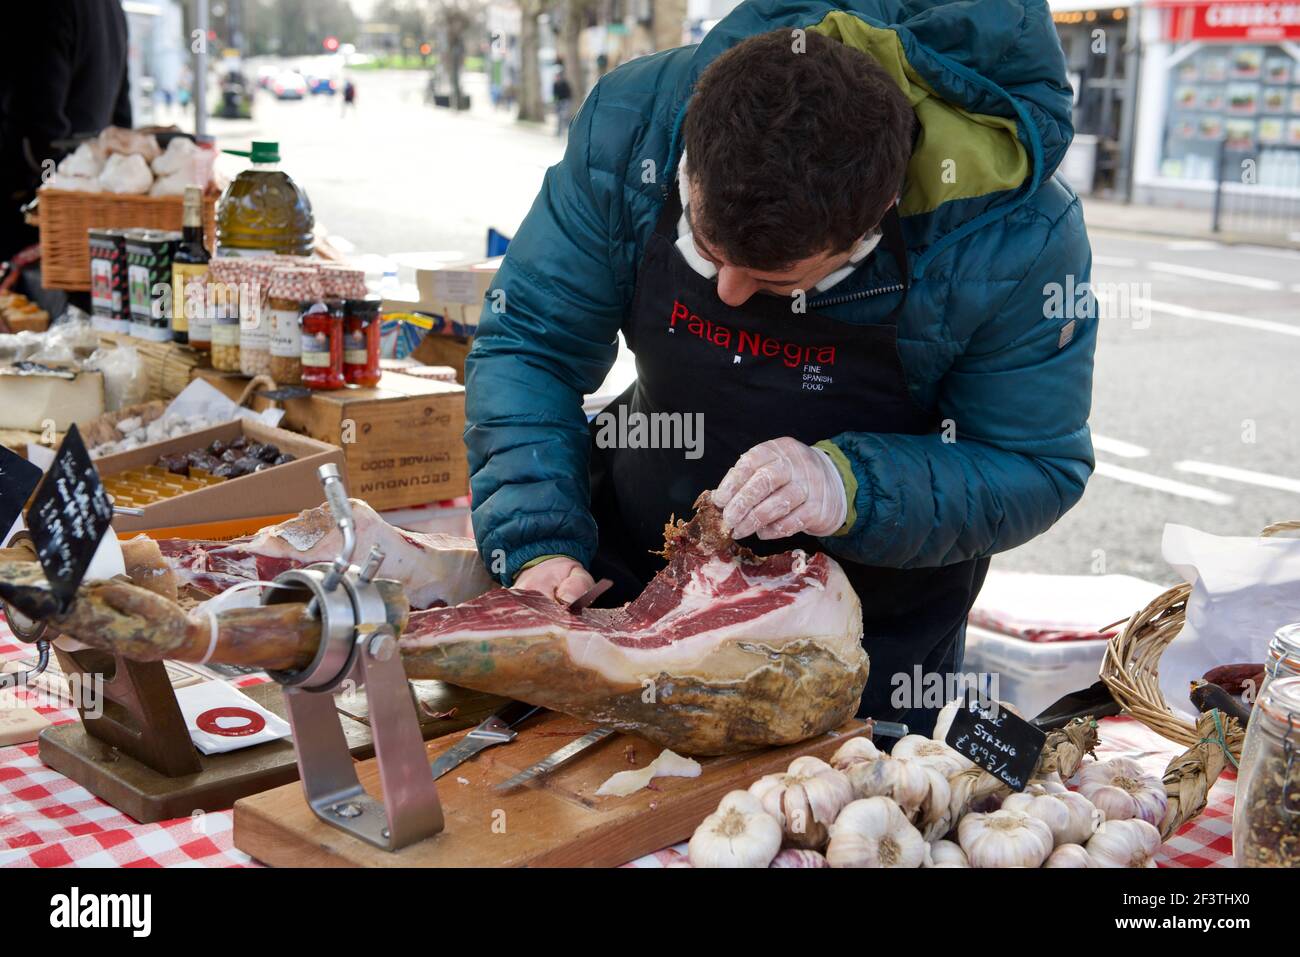 Serrano ham stall at Farmers Market Stock Photo